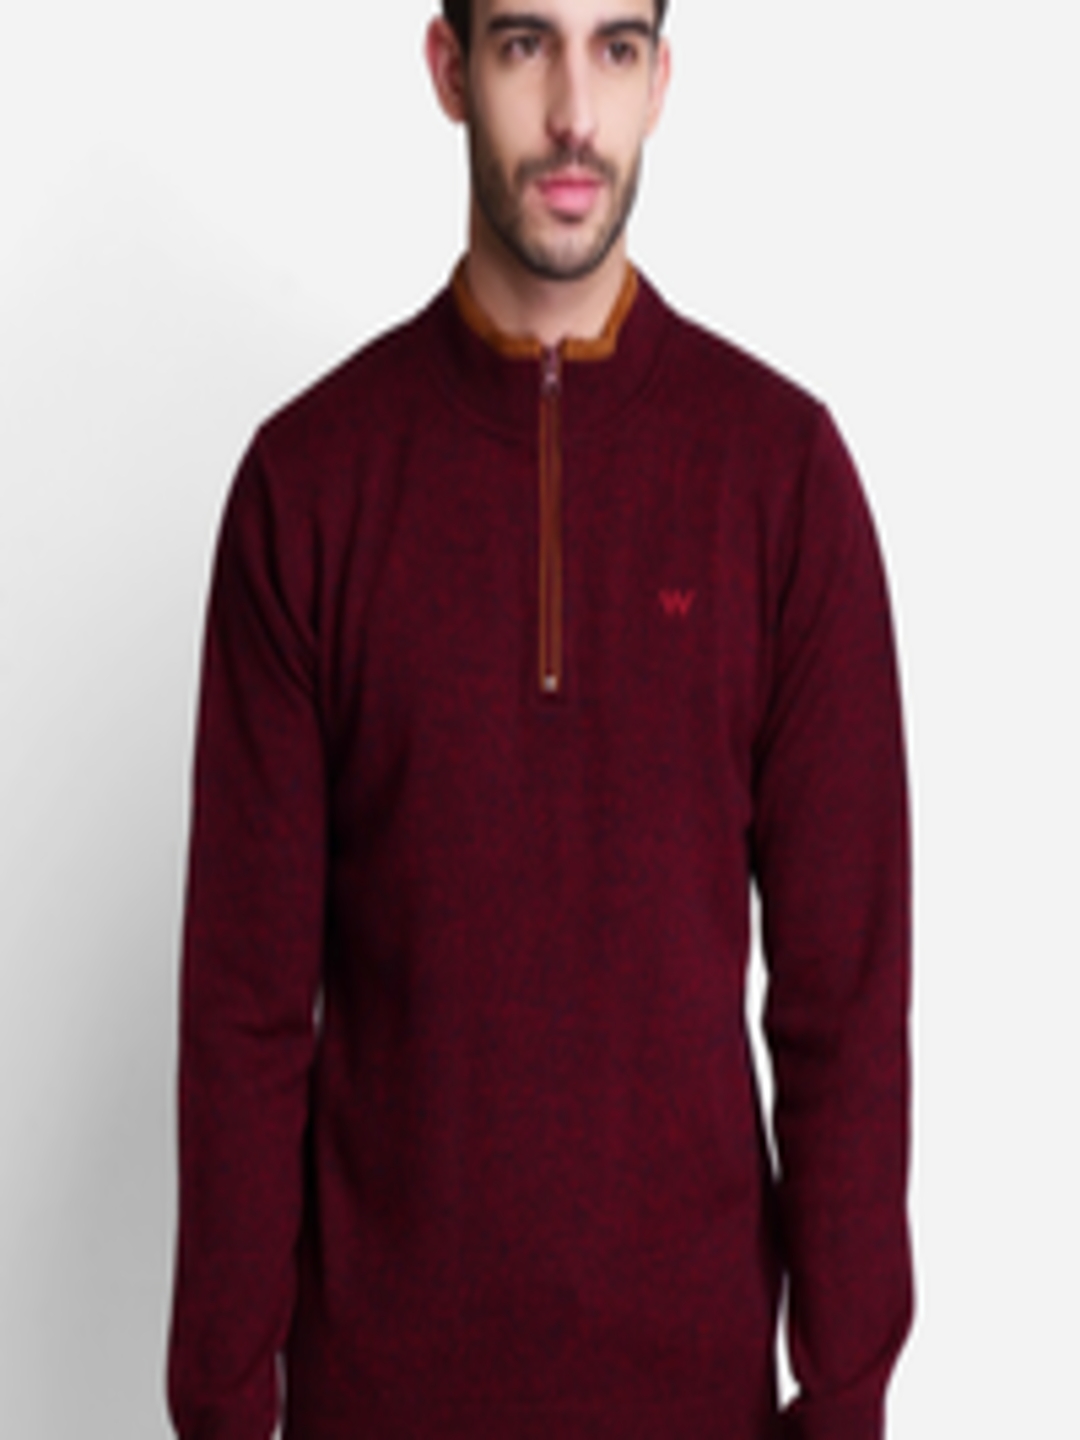 Buy Wildcraft Men Red & Orange Pullover - Sweaters for Men 20788136 ...